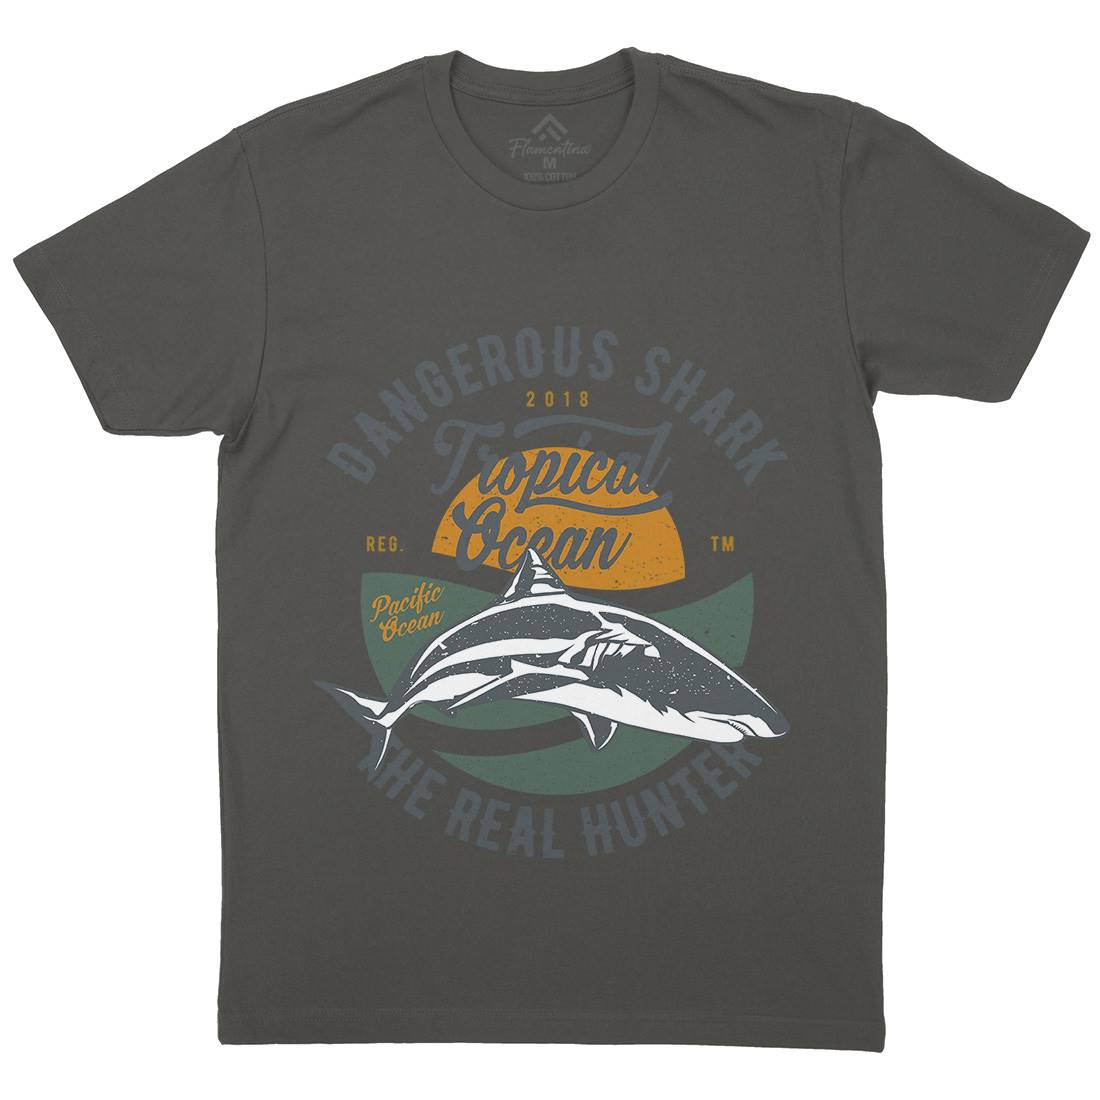 Dangerous Shark Mens Organic Crew Neck T-Shirt Navy A643